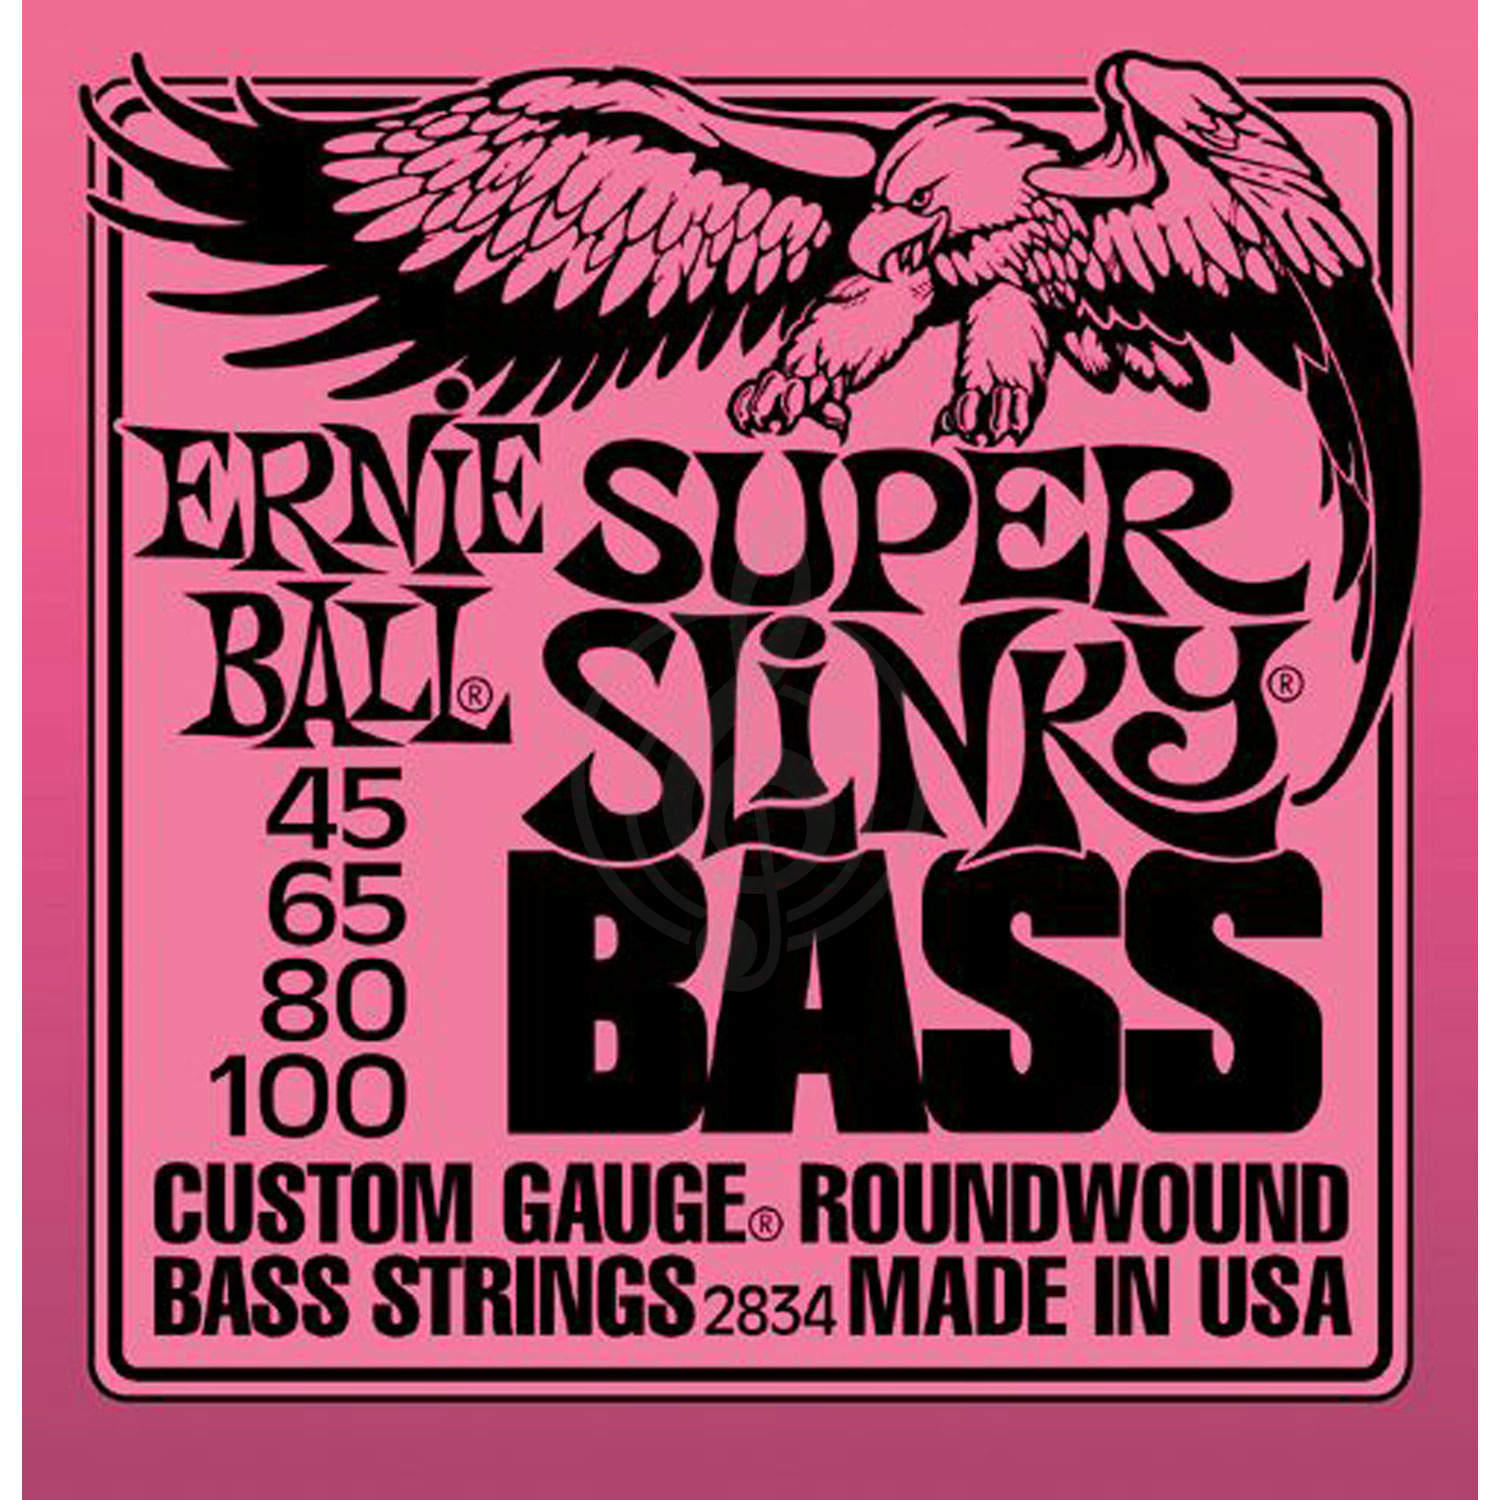 Струны для бас-гитары Струны для бас-гитар Ernie Ball Ernie Ball 2834 струны для бас гитары Super 45-100 2834 - фото 1